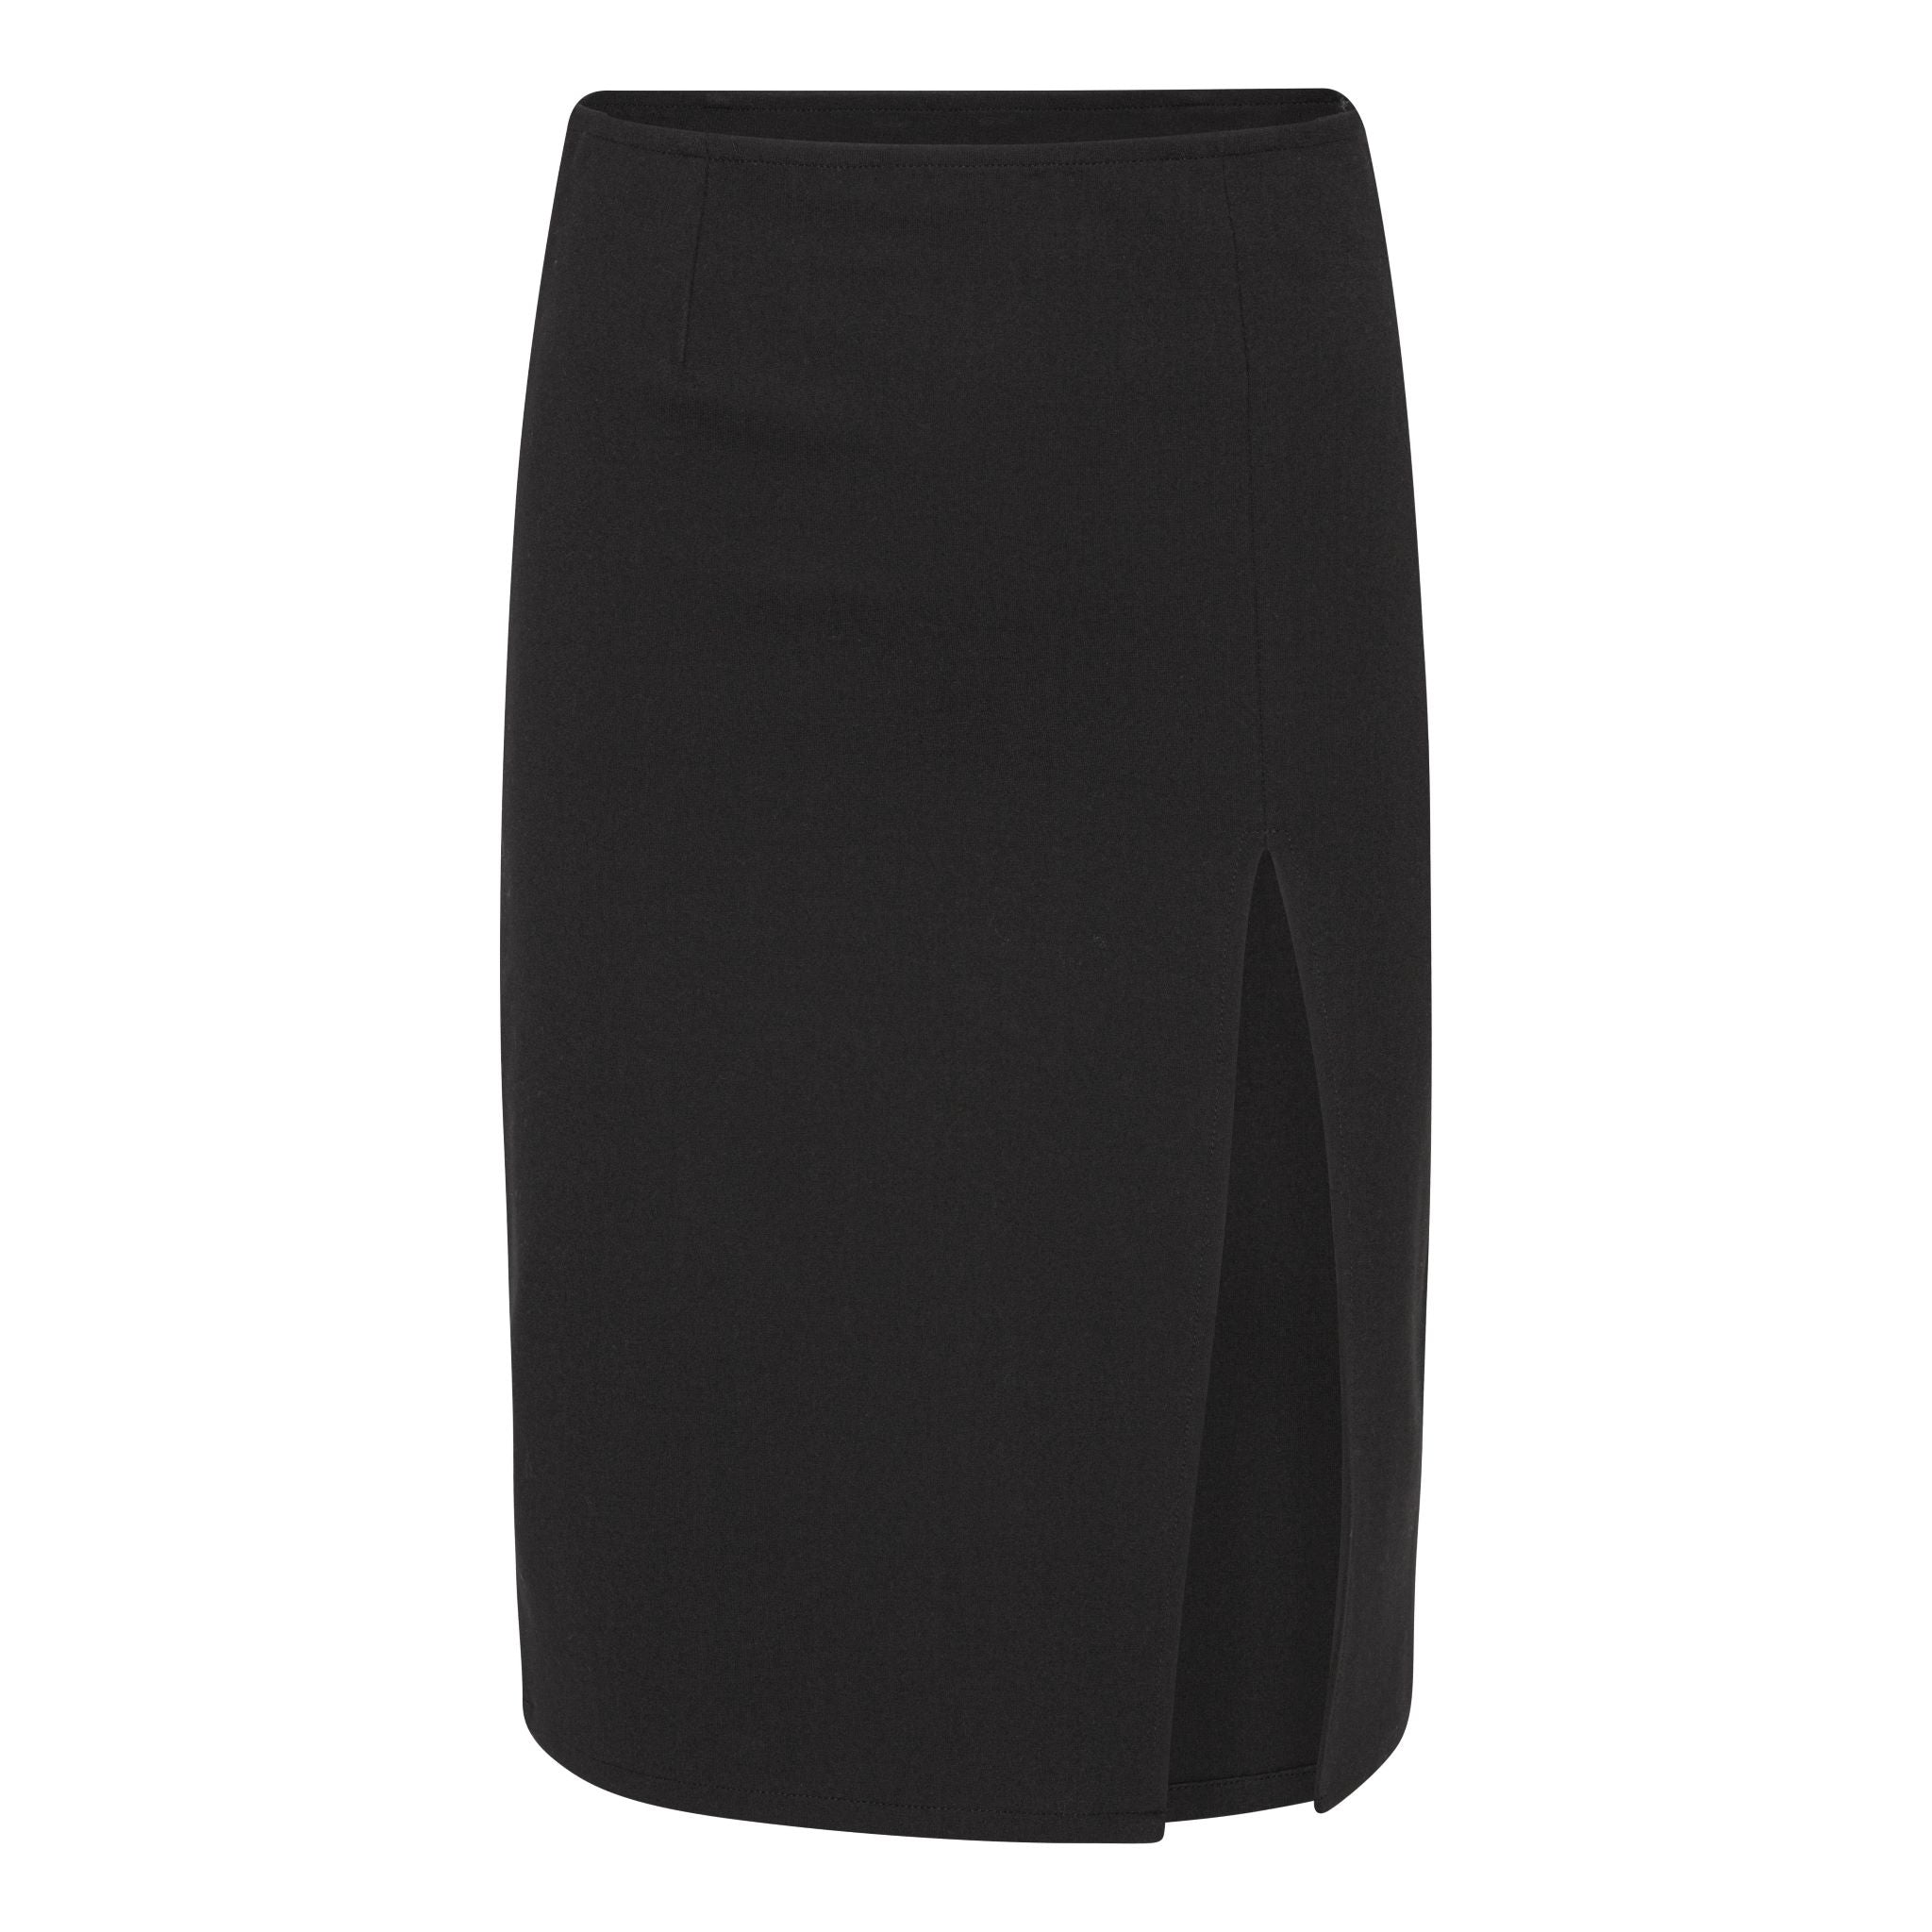 Black skirt with slit